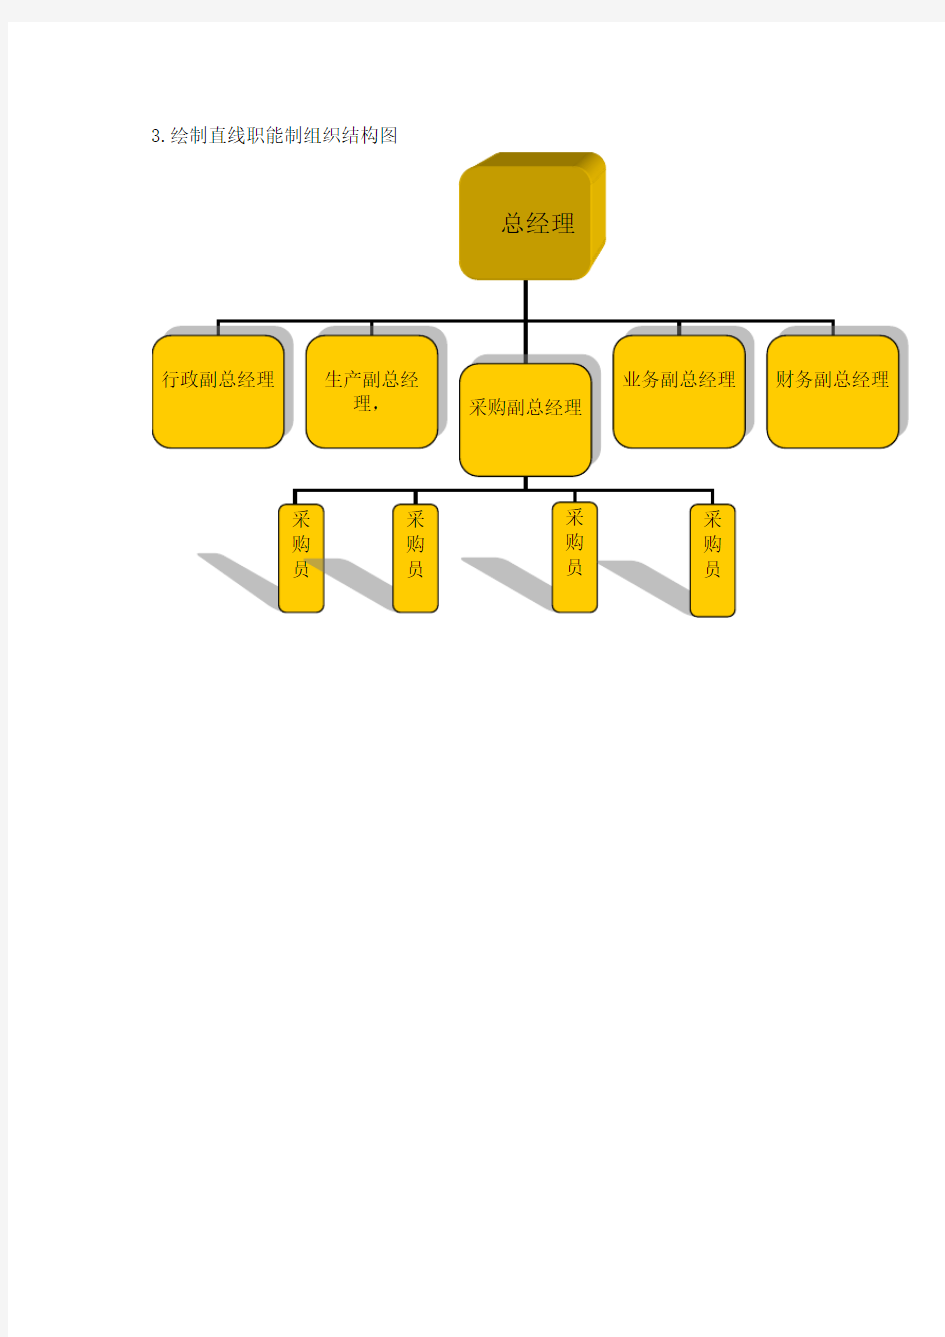 1.绘制直线制组织结构图